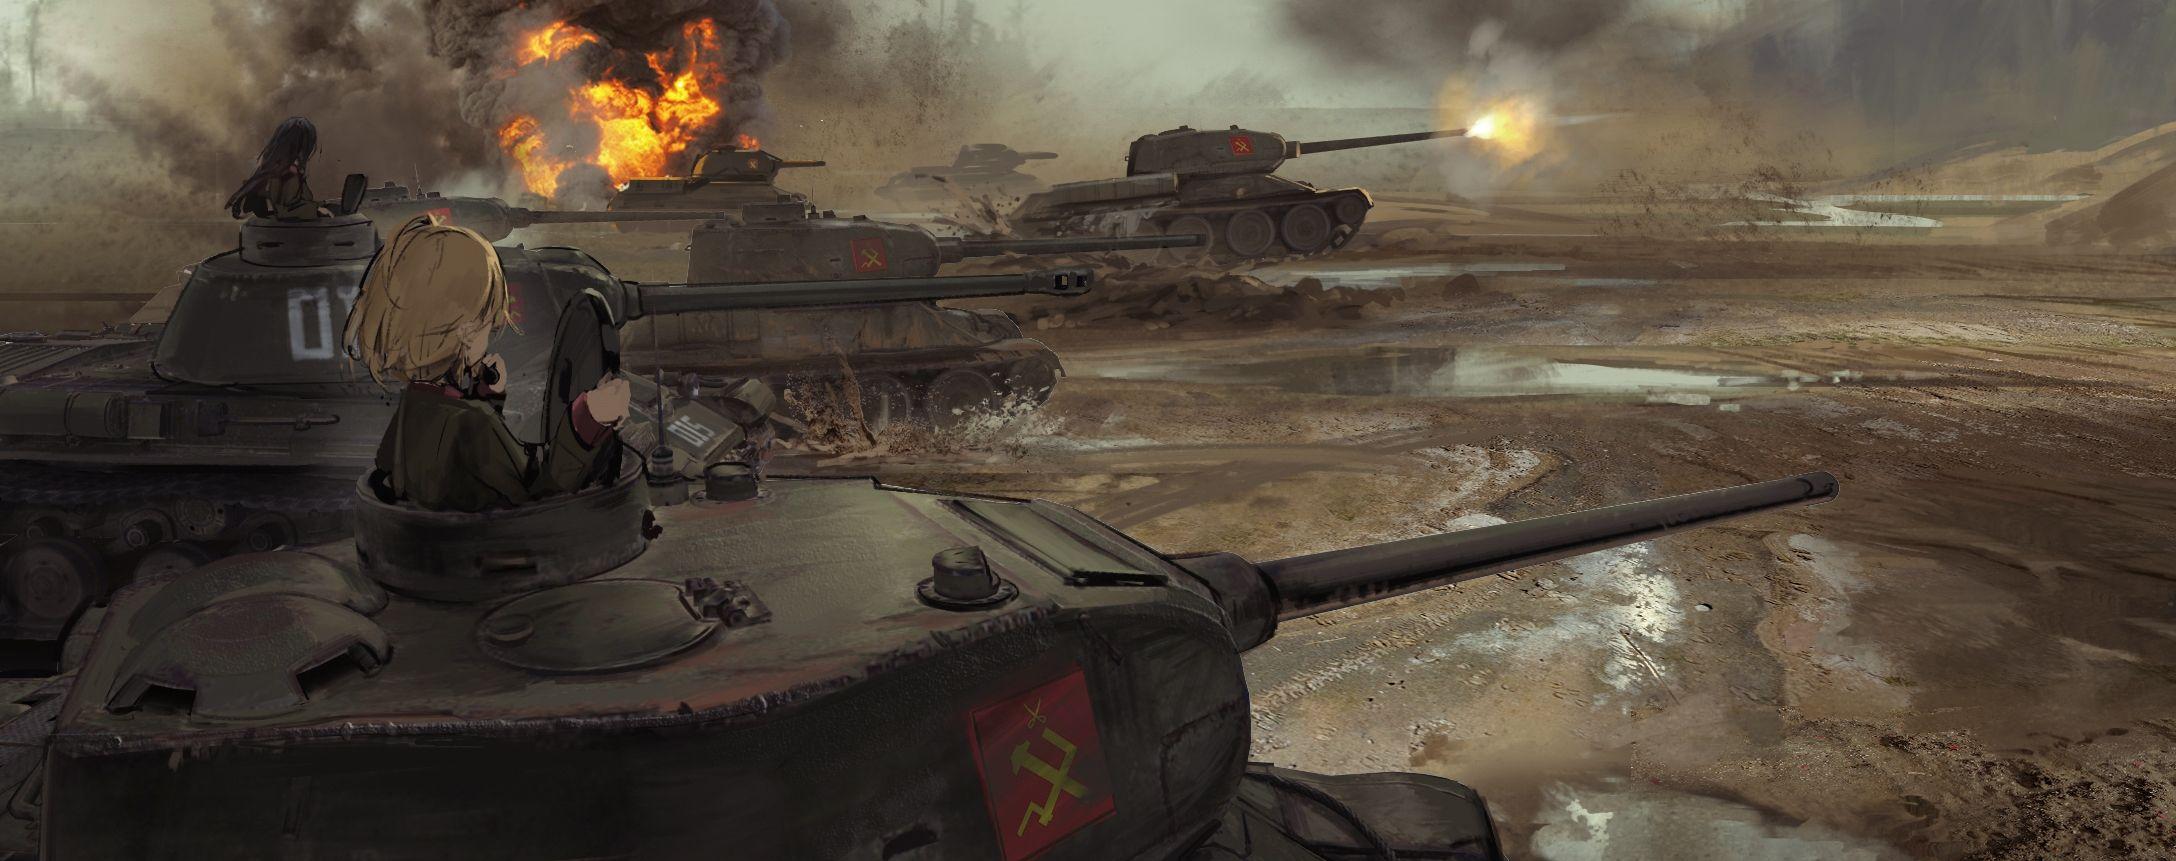 Wallpaper Girls Und Panzer, Battlefield, Tanks, Explosion